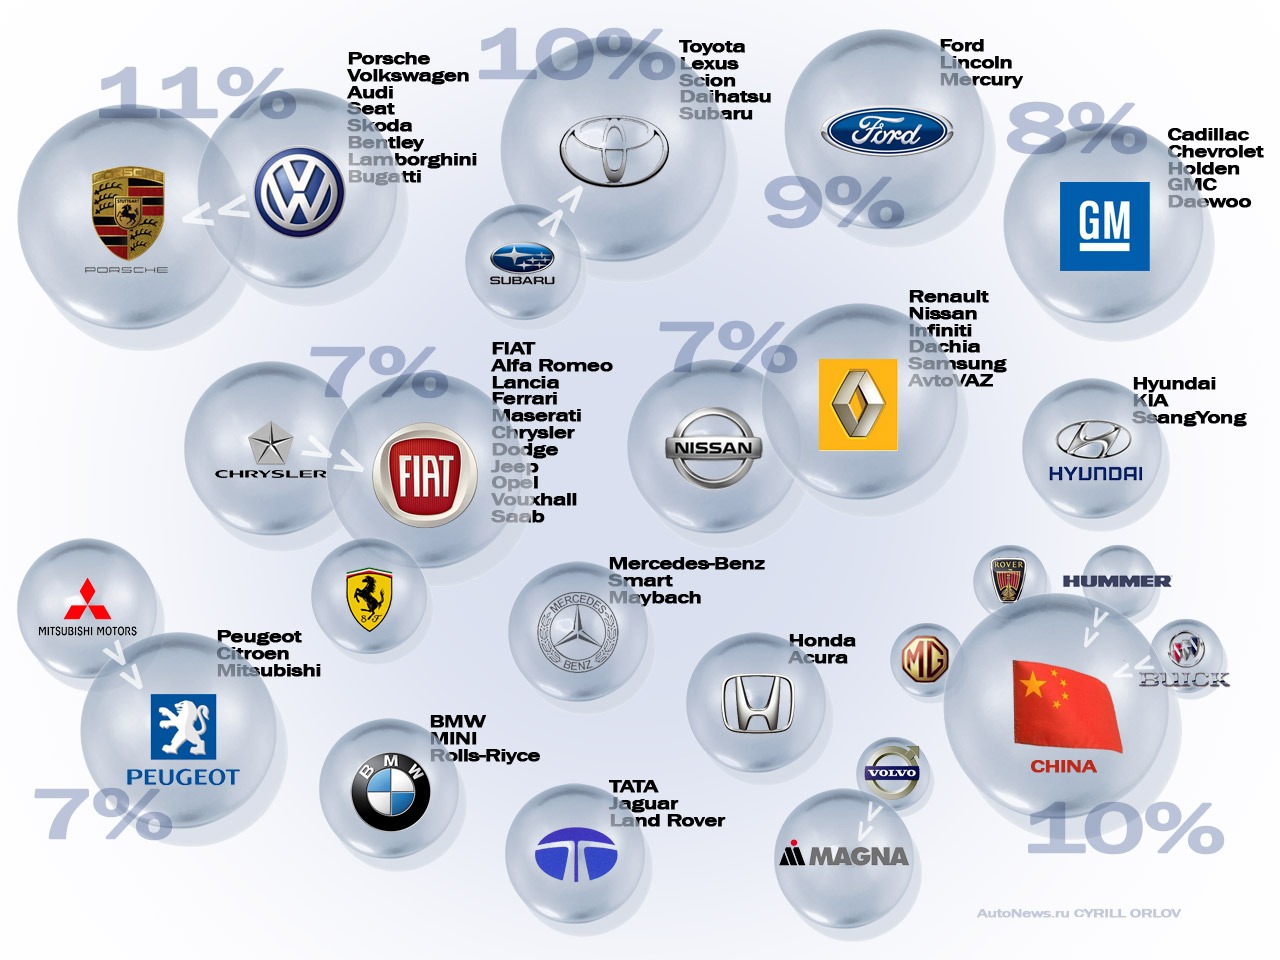 Производители стоил. Концерны автомобилей. Концерны и марки автомобилей. Автомобильные бренды и концерны. Компании производители автомобилей.